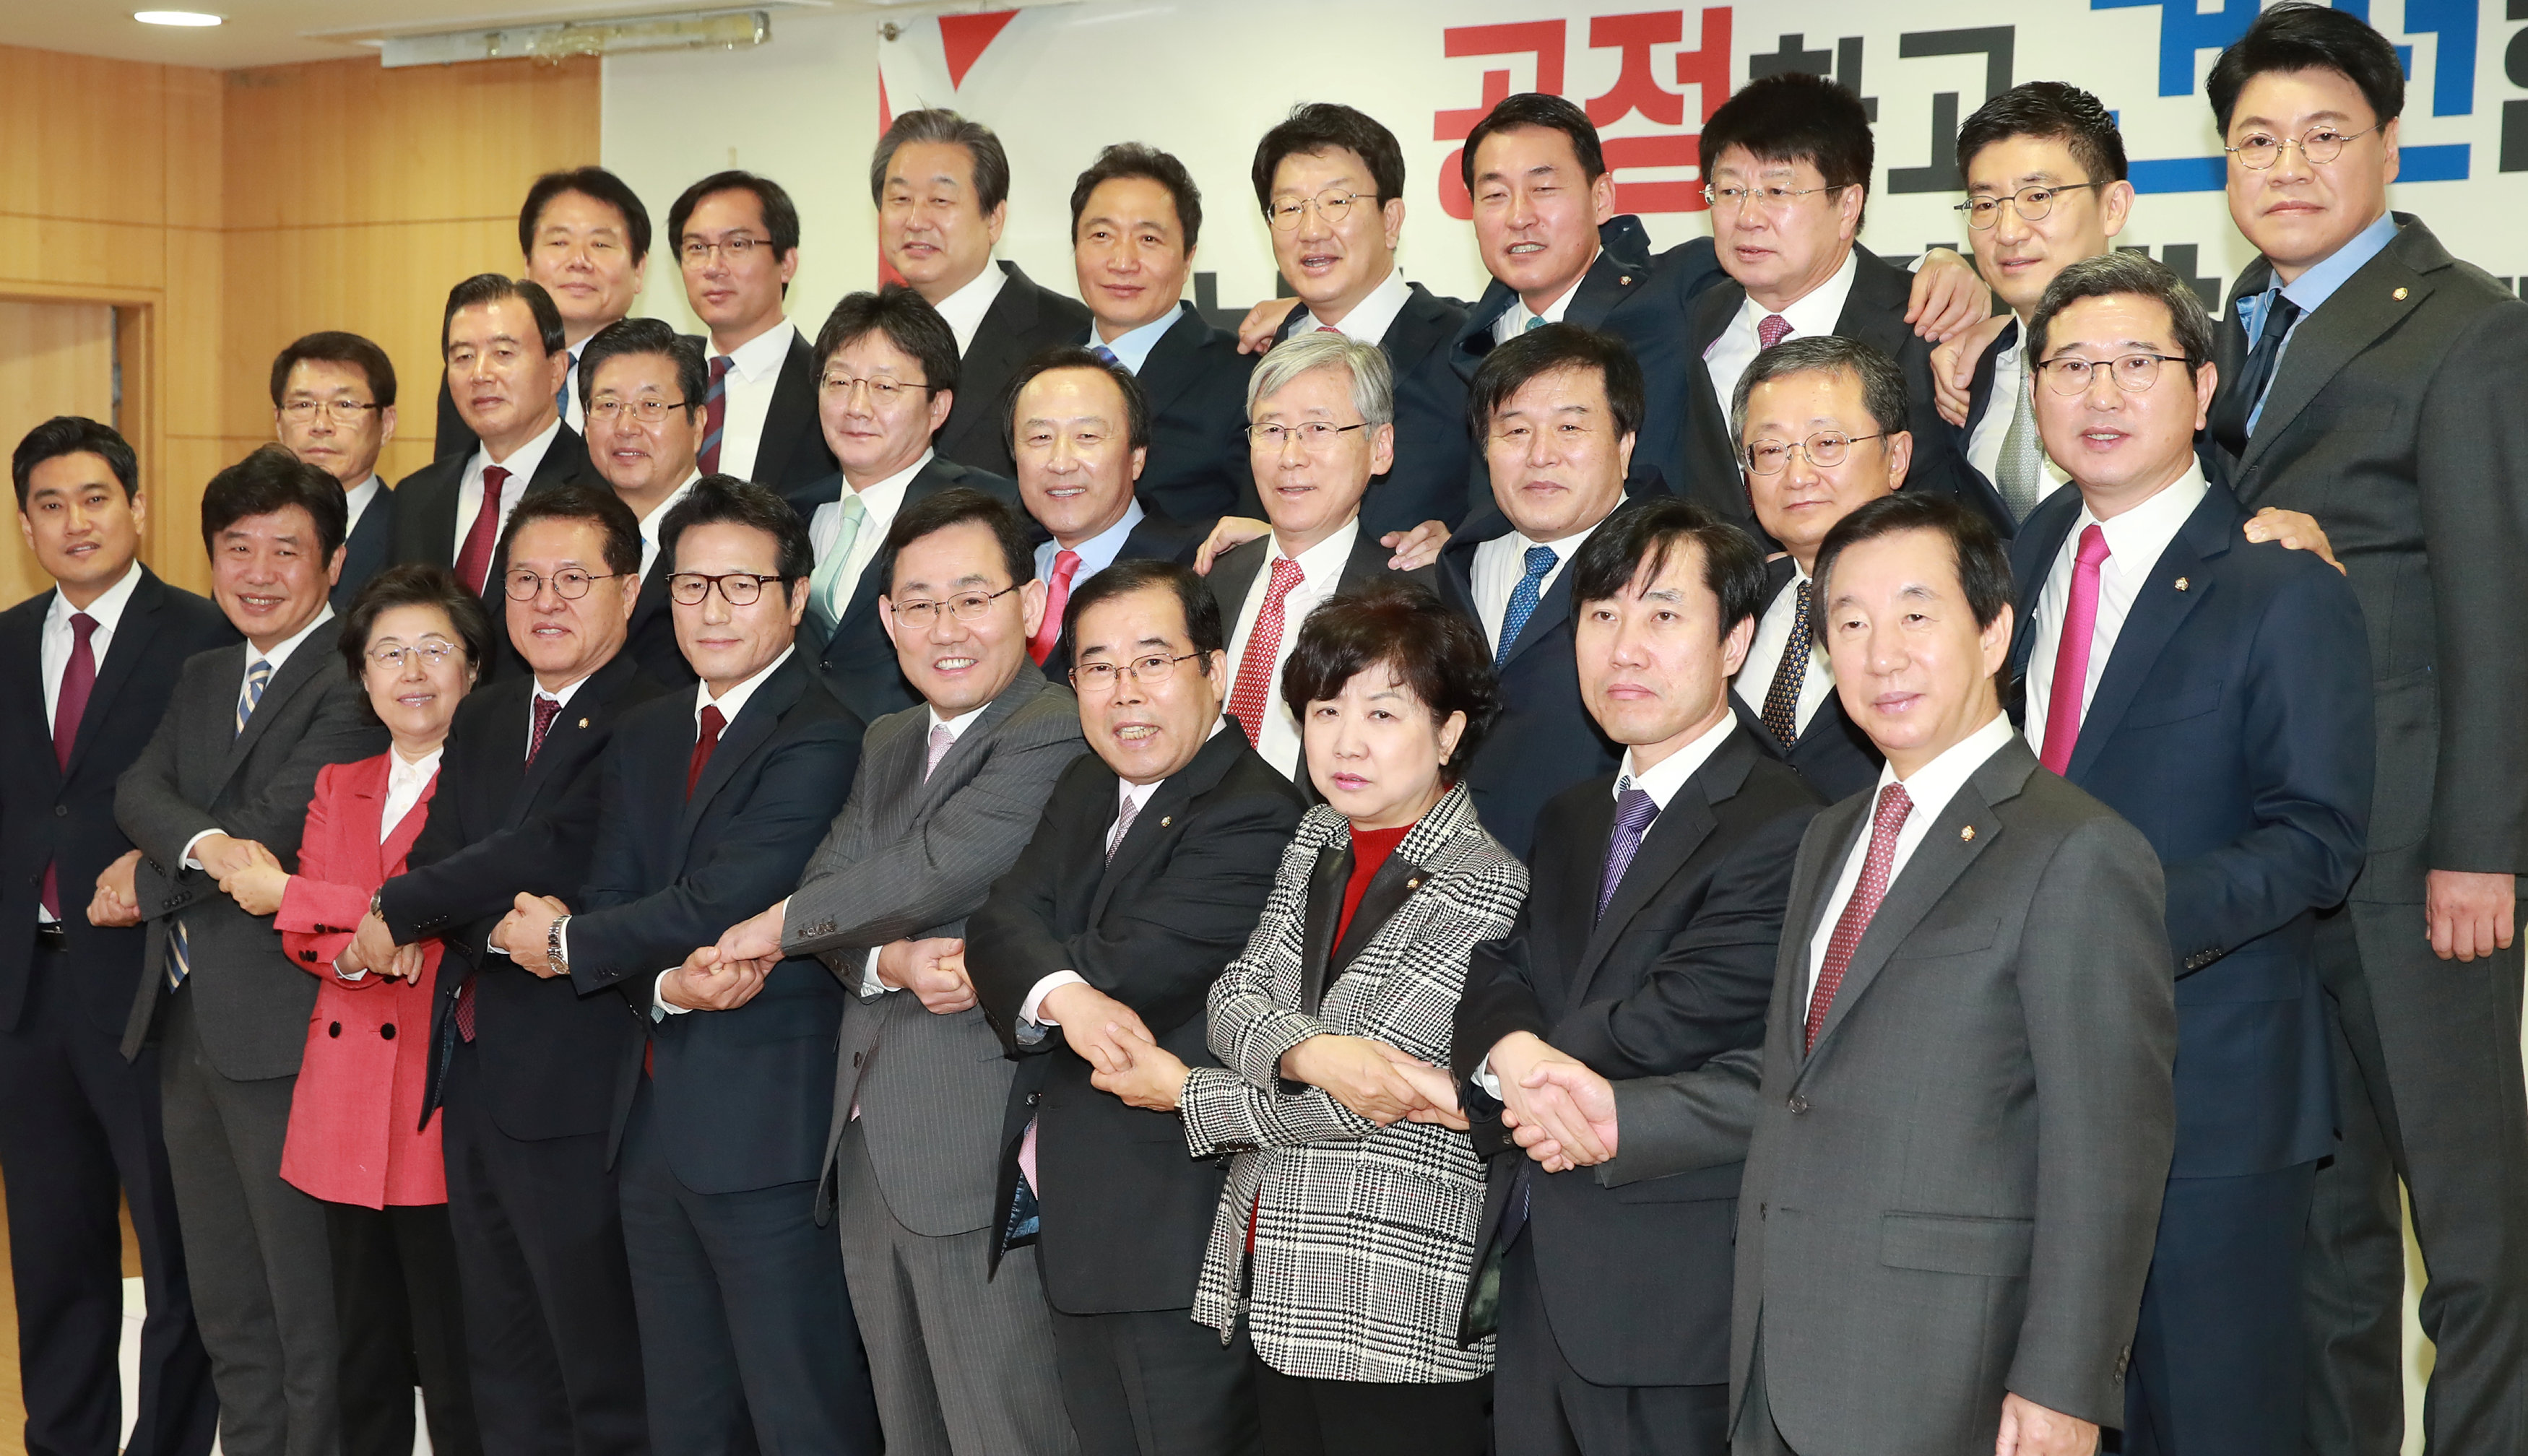 النواب الكوريون الجنوبيون  بعد إعلان انشقاقهم عن الحزب الحاكم